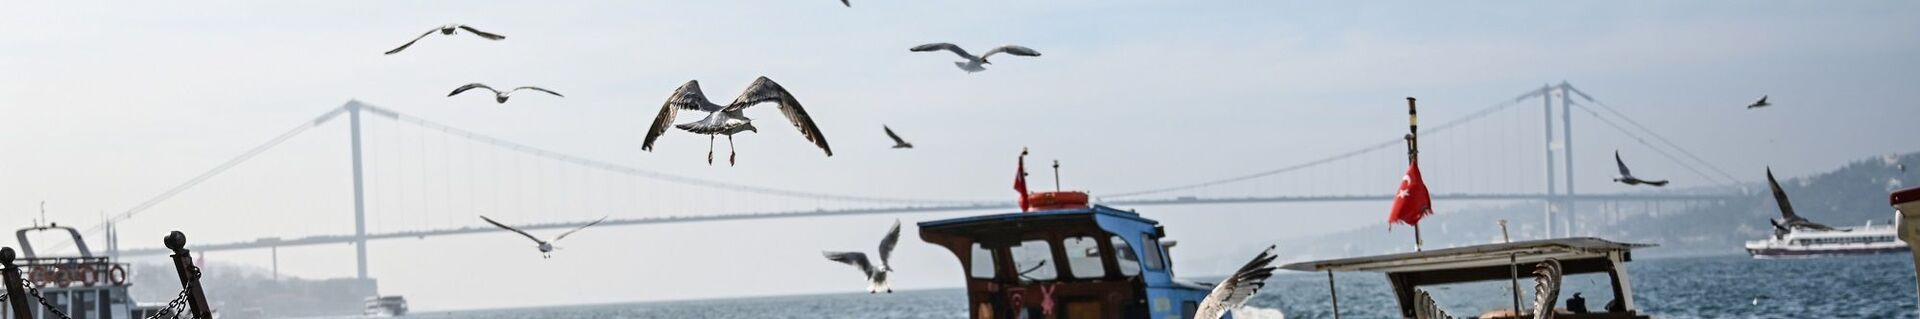 İstanbul - Boğaz - Martı - tekne - köprü - Sputnik Türkiye